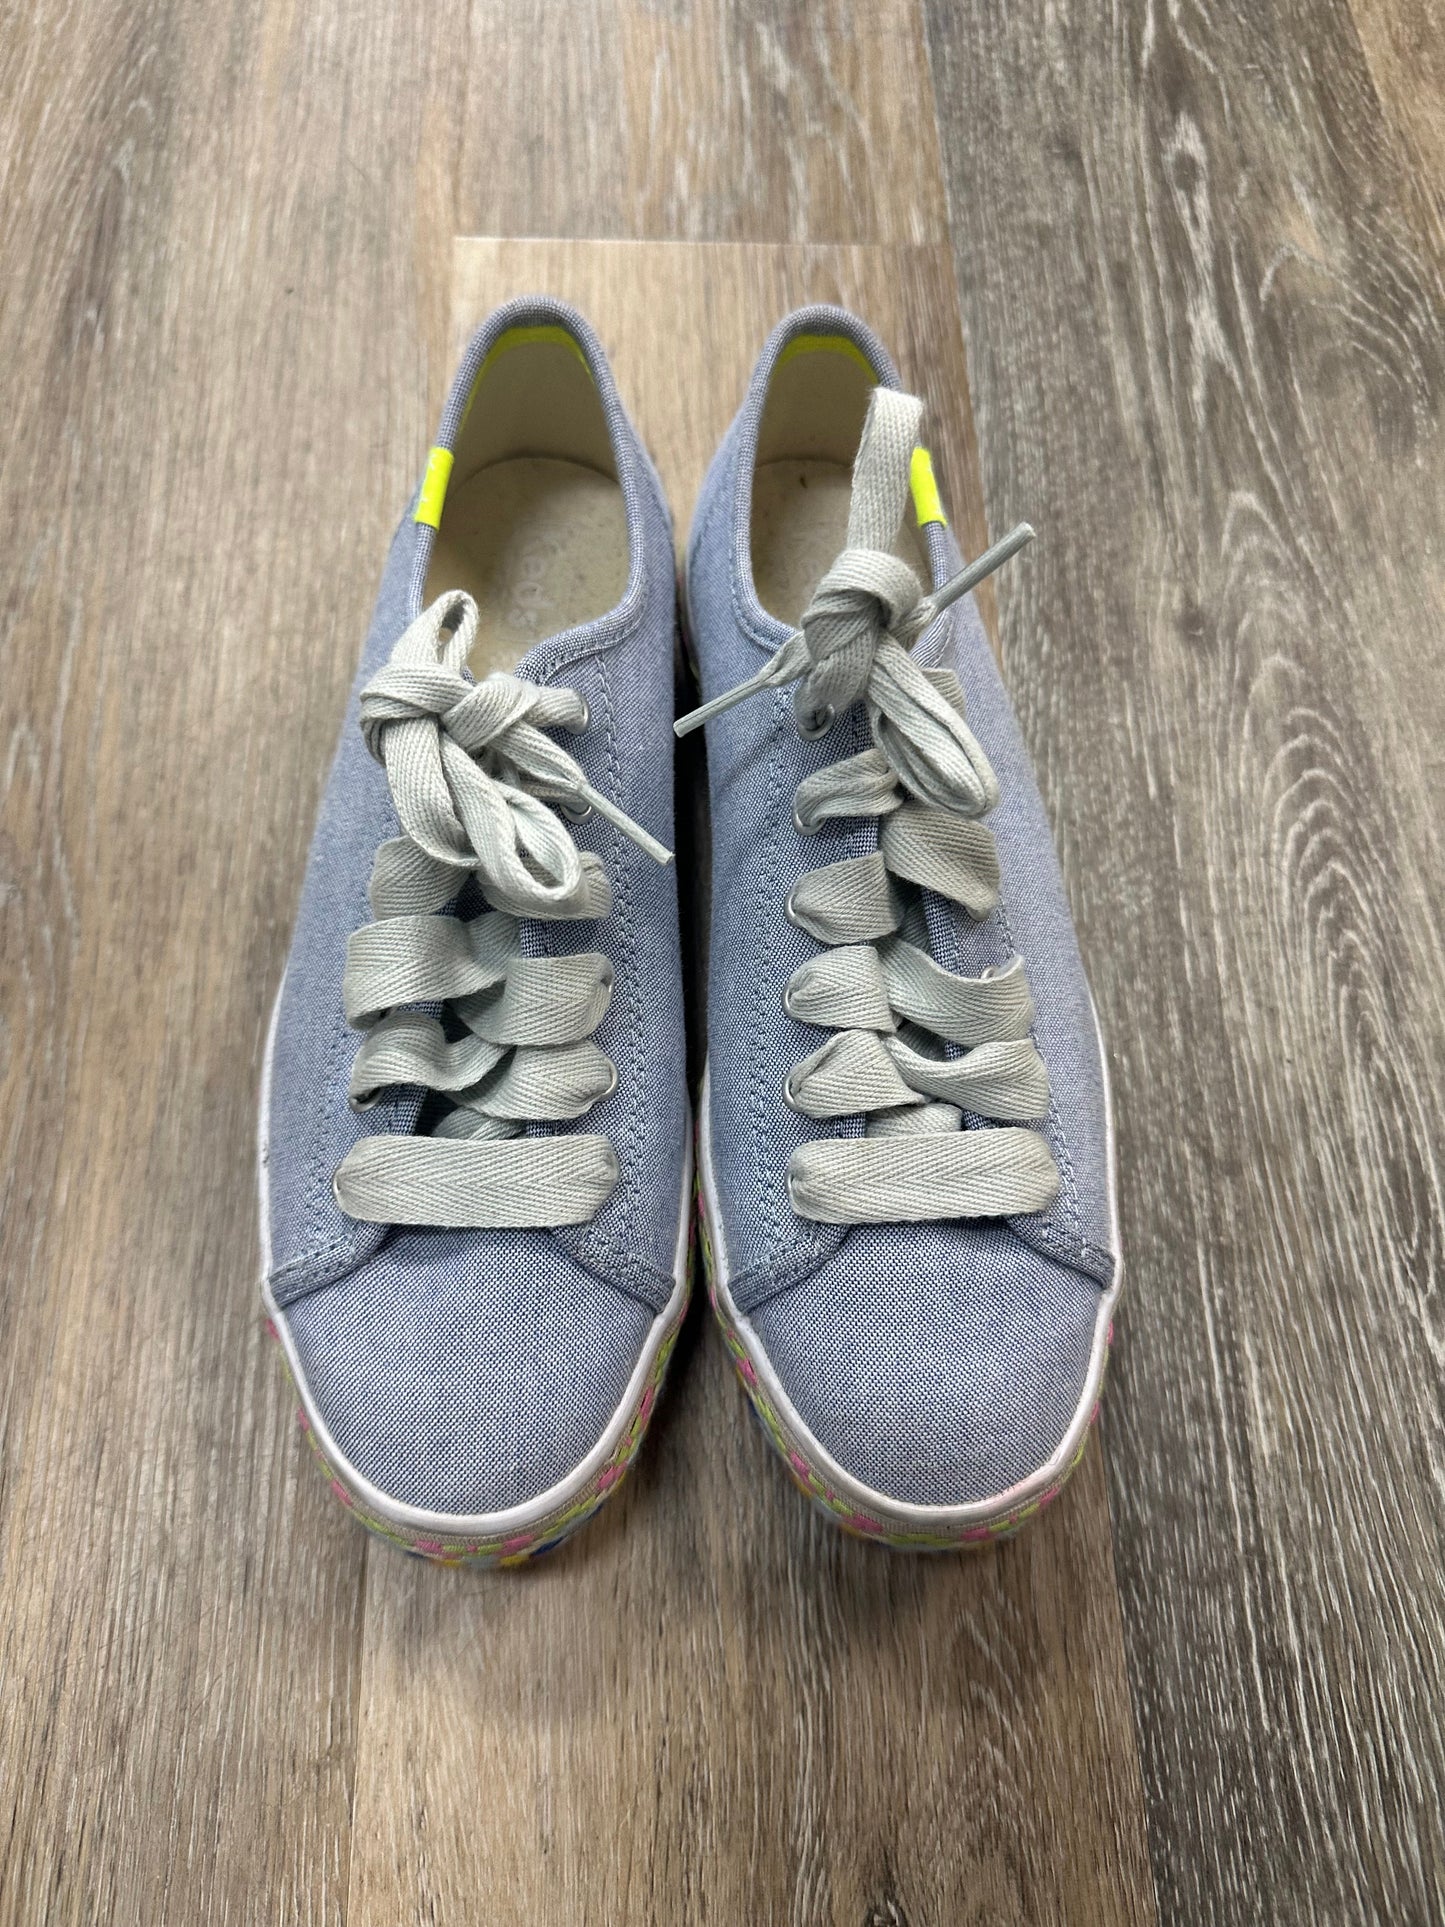 Blue Shoes Flats Keds, Size 7